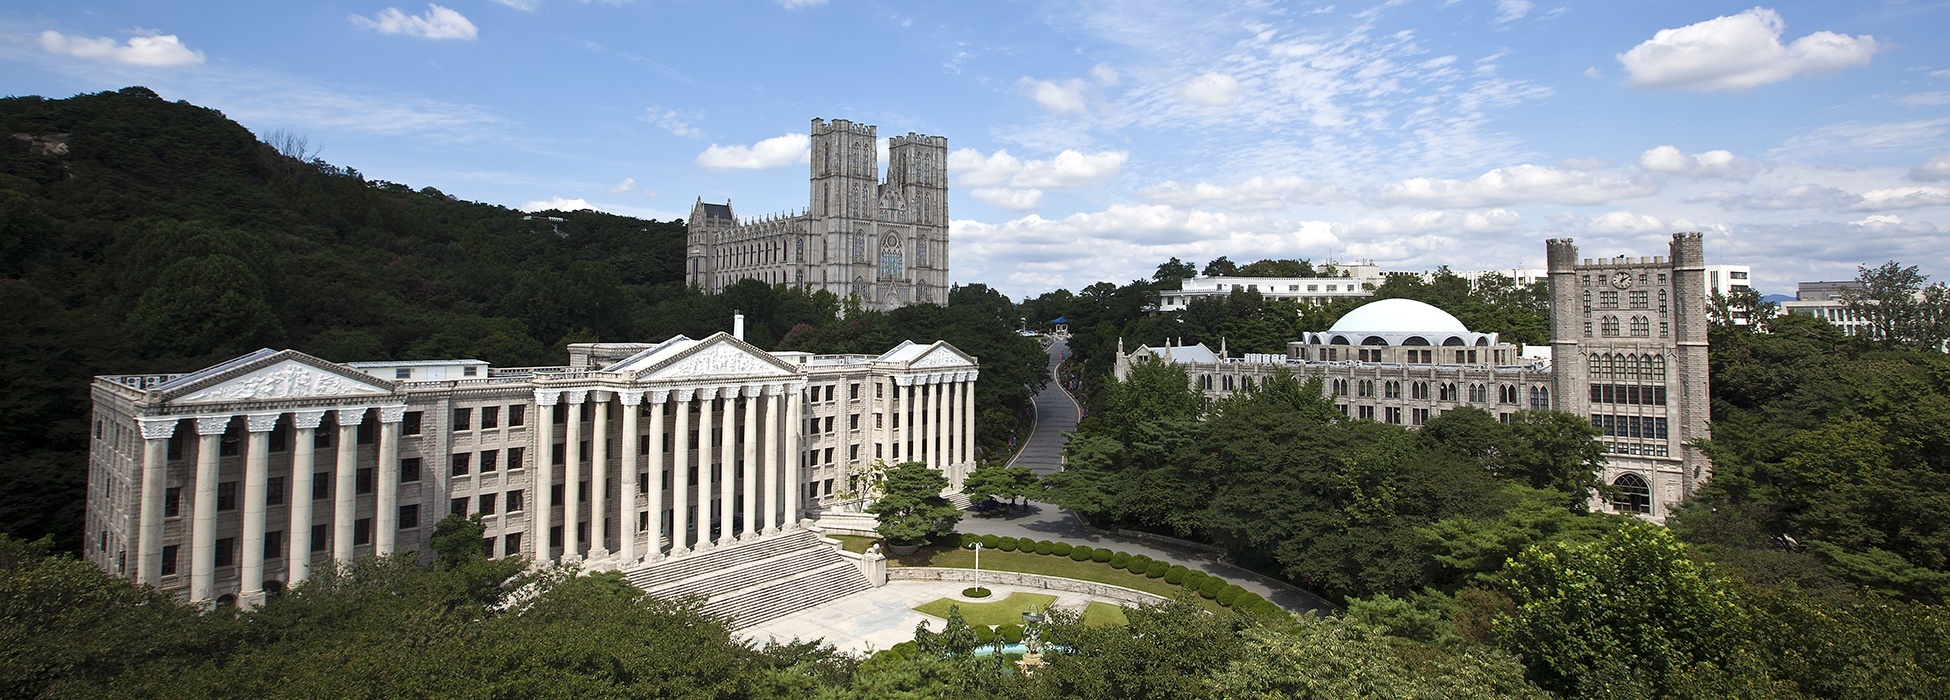 Resultado de imagen para kyung hee university